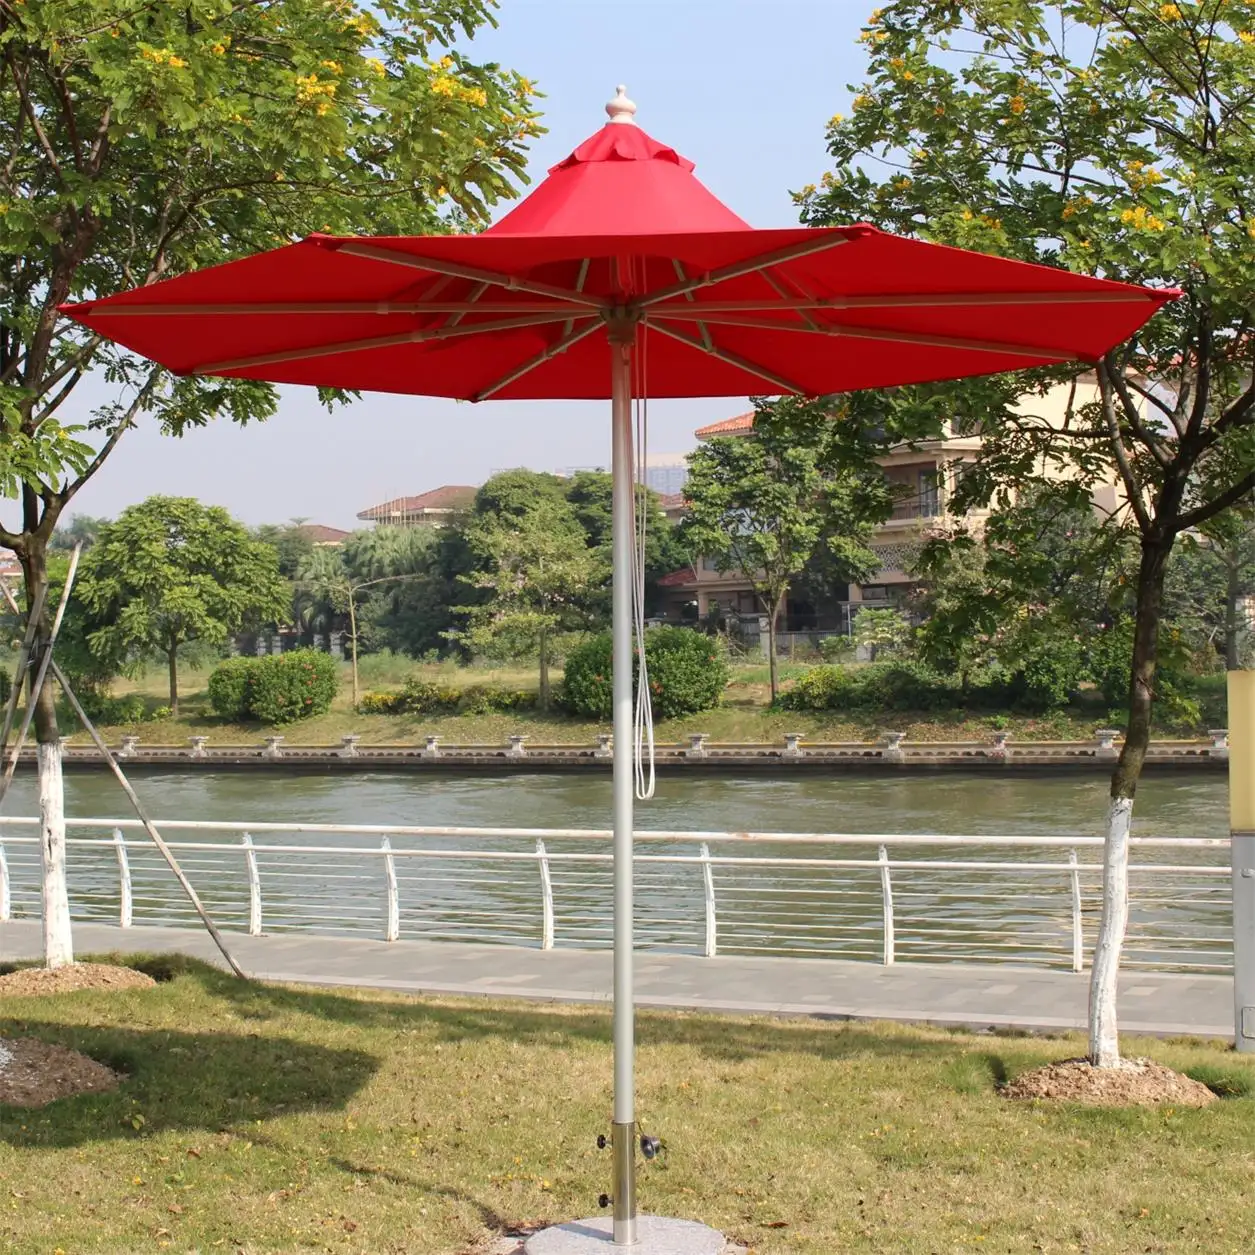 Speciale esterno decorare cappello a forma di tavola rotonda ombrelloni mobili giardino parasole